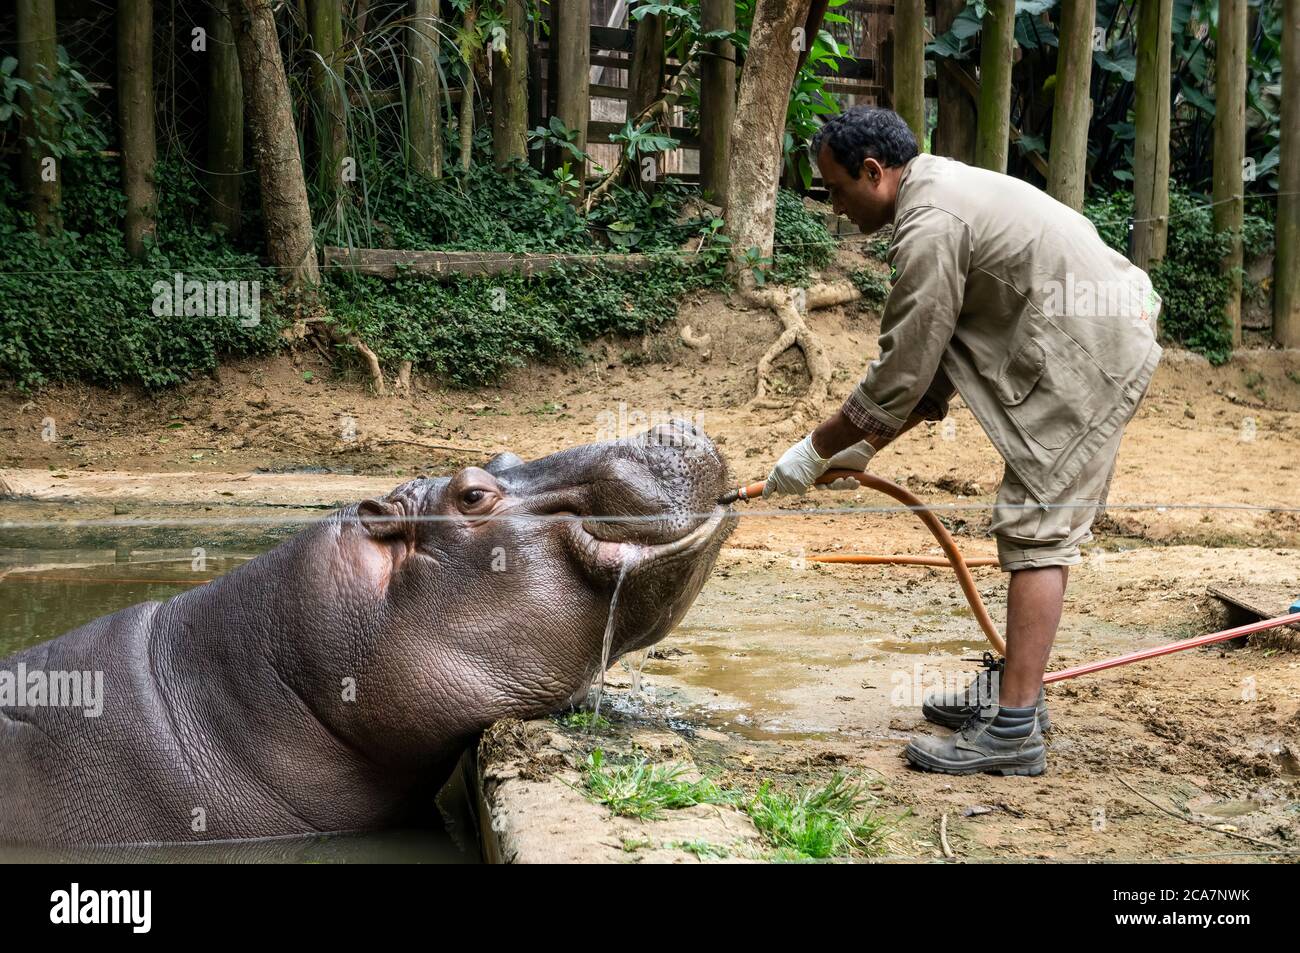 Un Hippopotamus (Hippopotamus anfibio - grande, per lo più erbivoro, mammifero semiacquatico) acqua potabile servita da un custode dello zoo nel parco Safari Zoo. Foto Stock